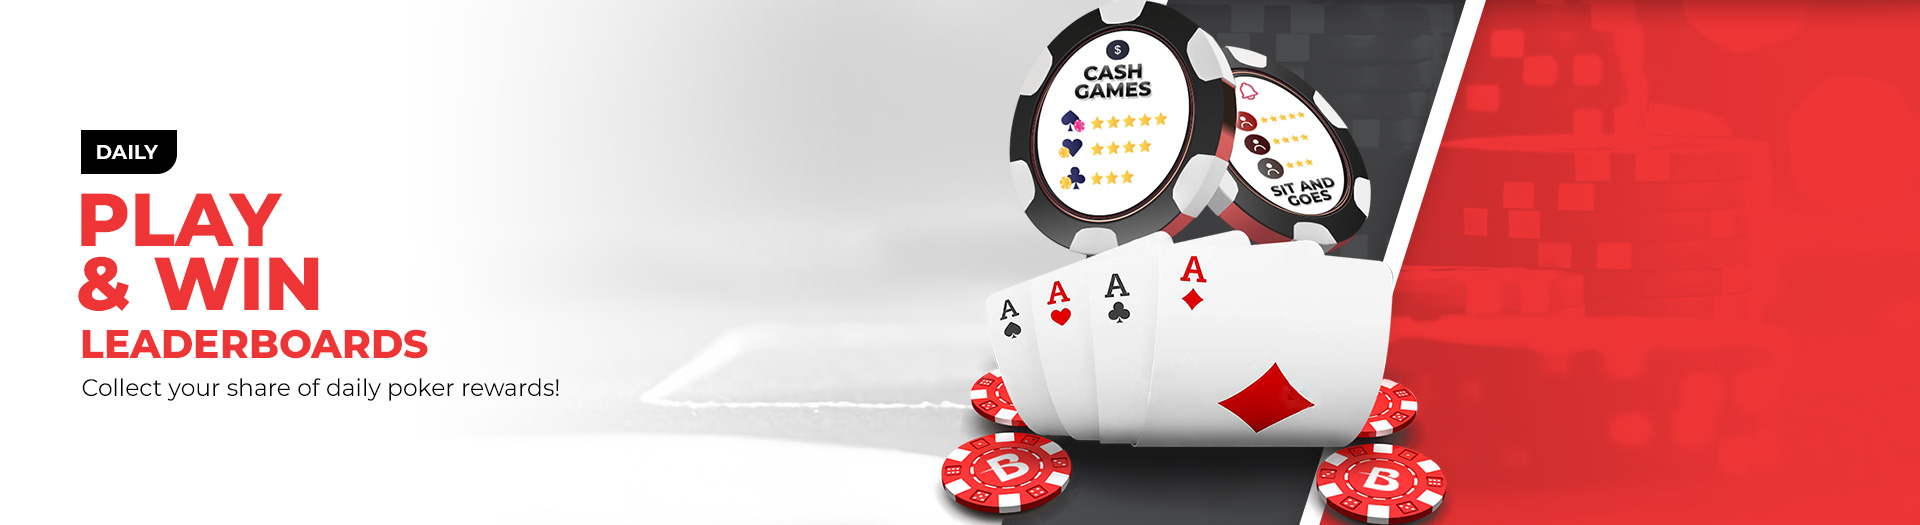 Daily Poker - BetOnline Casino